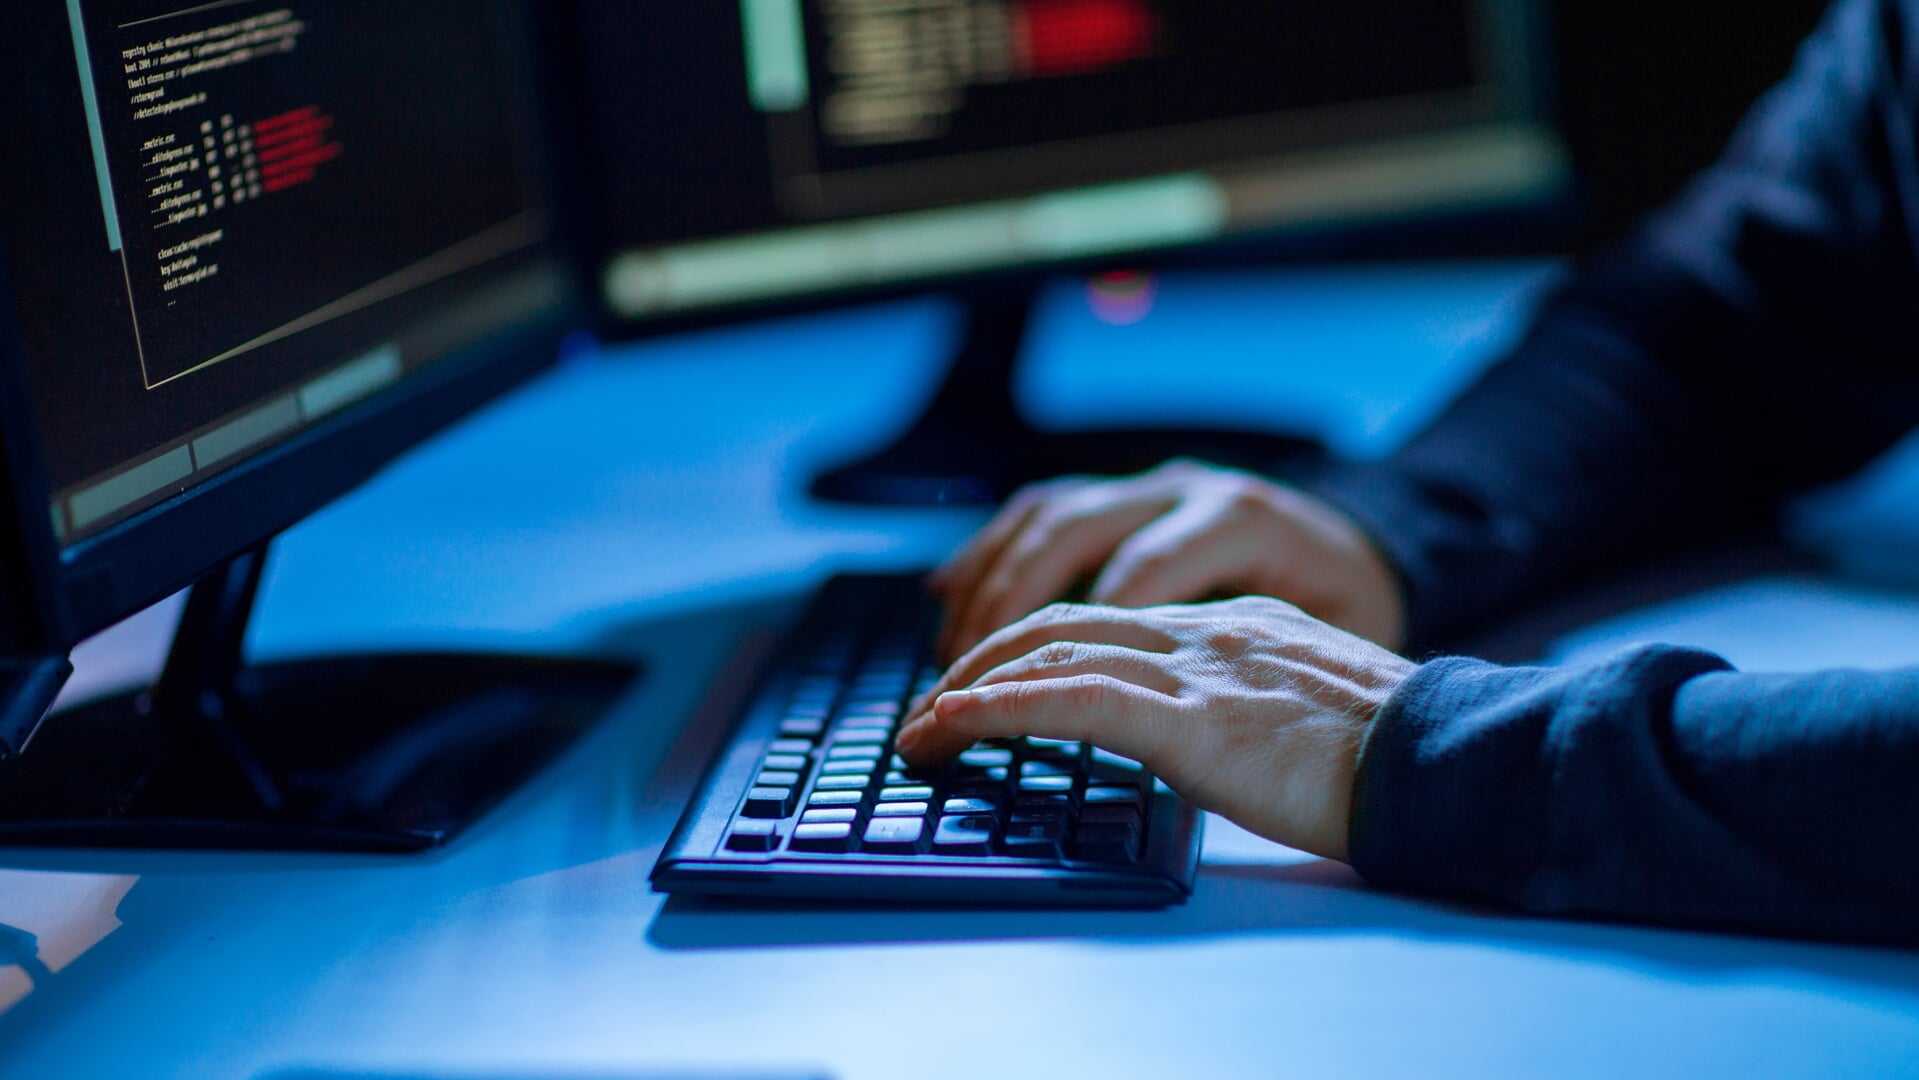 Zeeuwse agenten betrokken bij actie tegen 's werelds grootste hackersgroep  - Al het nieuws uit Tholen